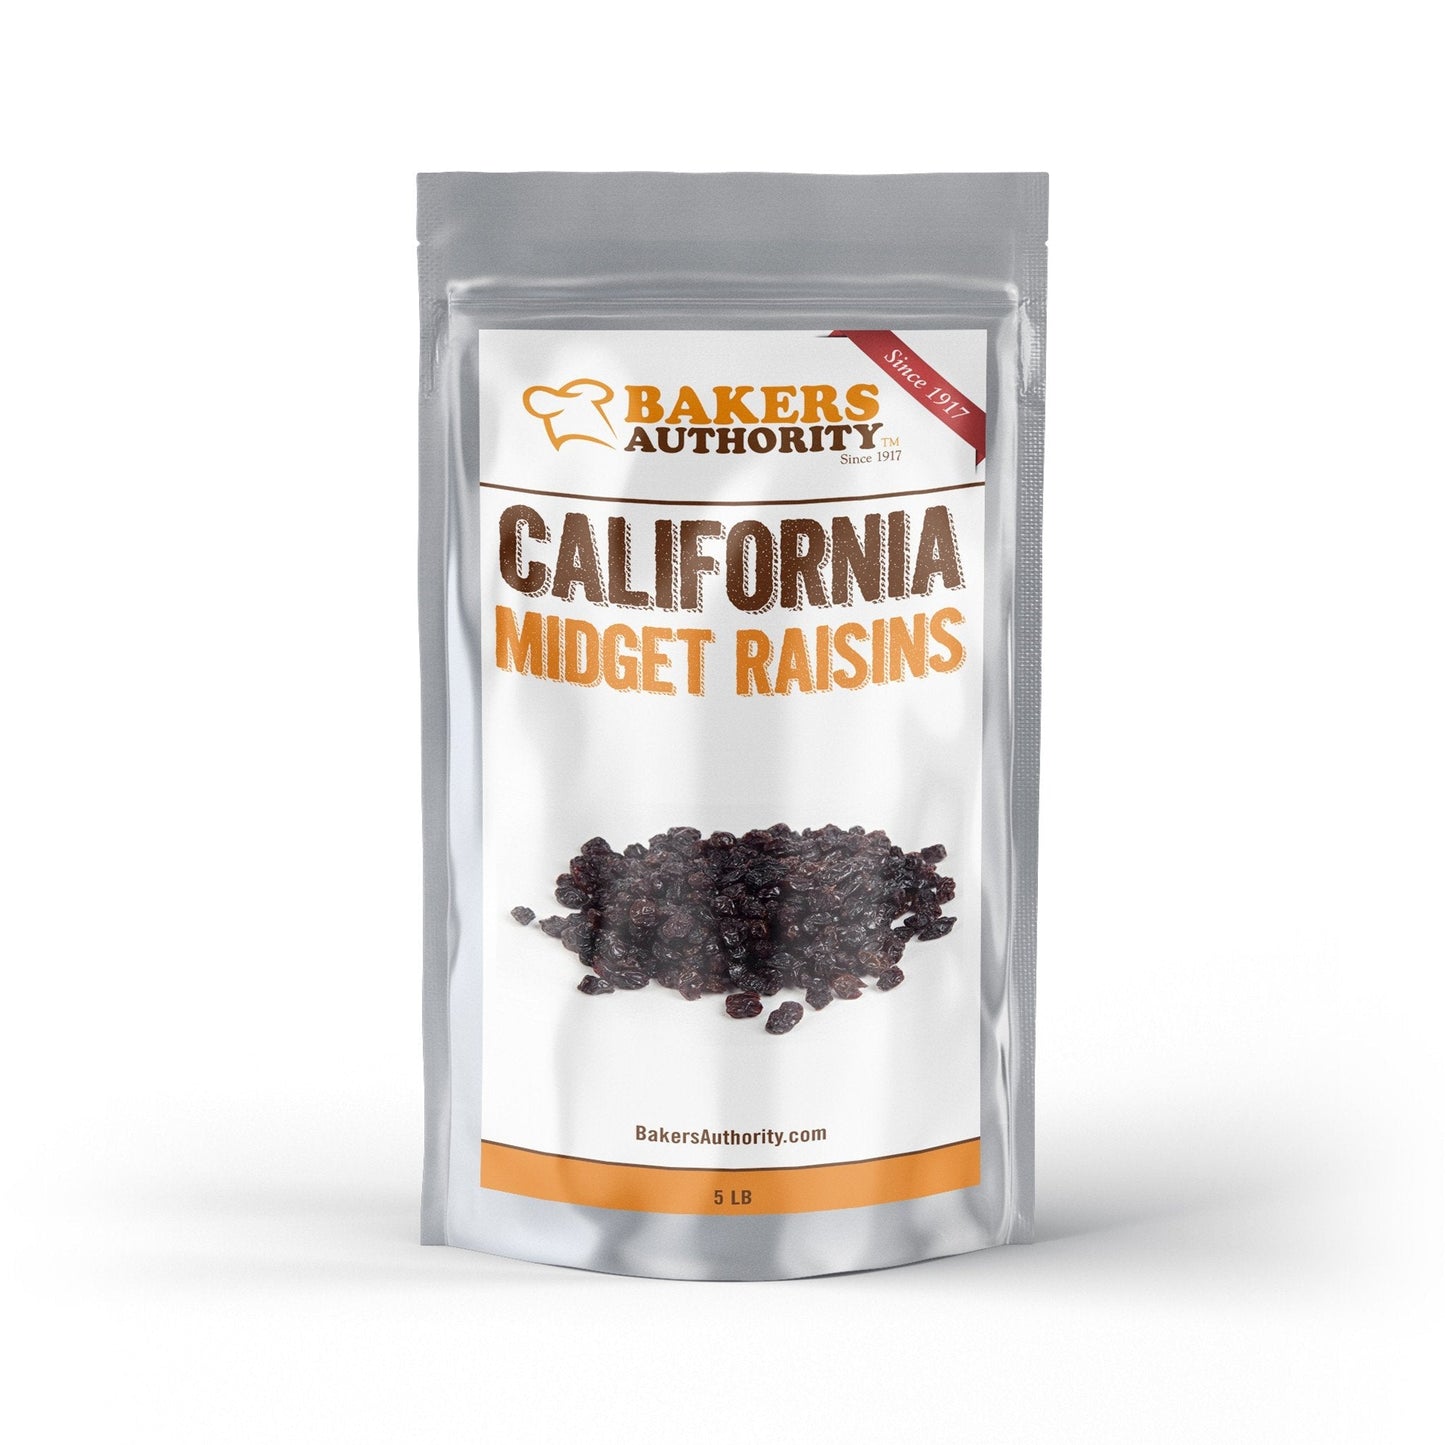 5LB Midget Raisins (California)